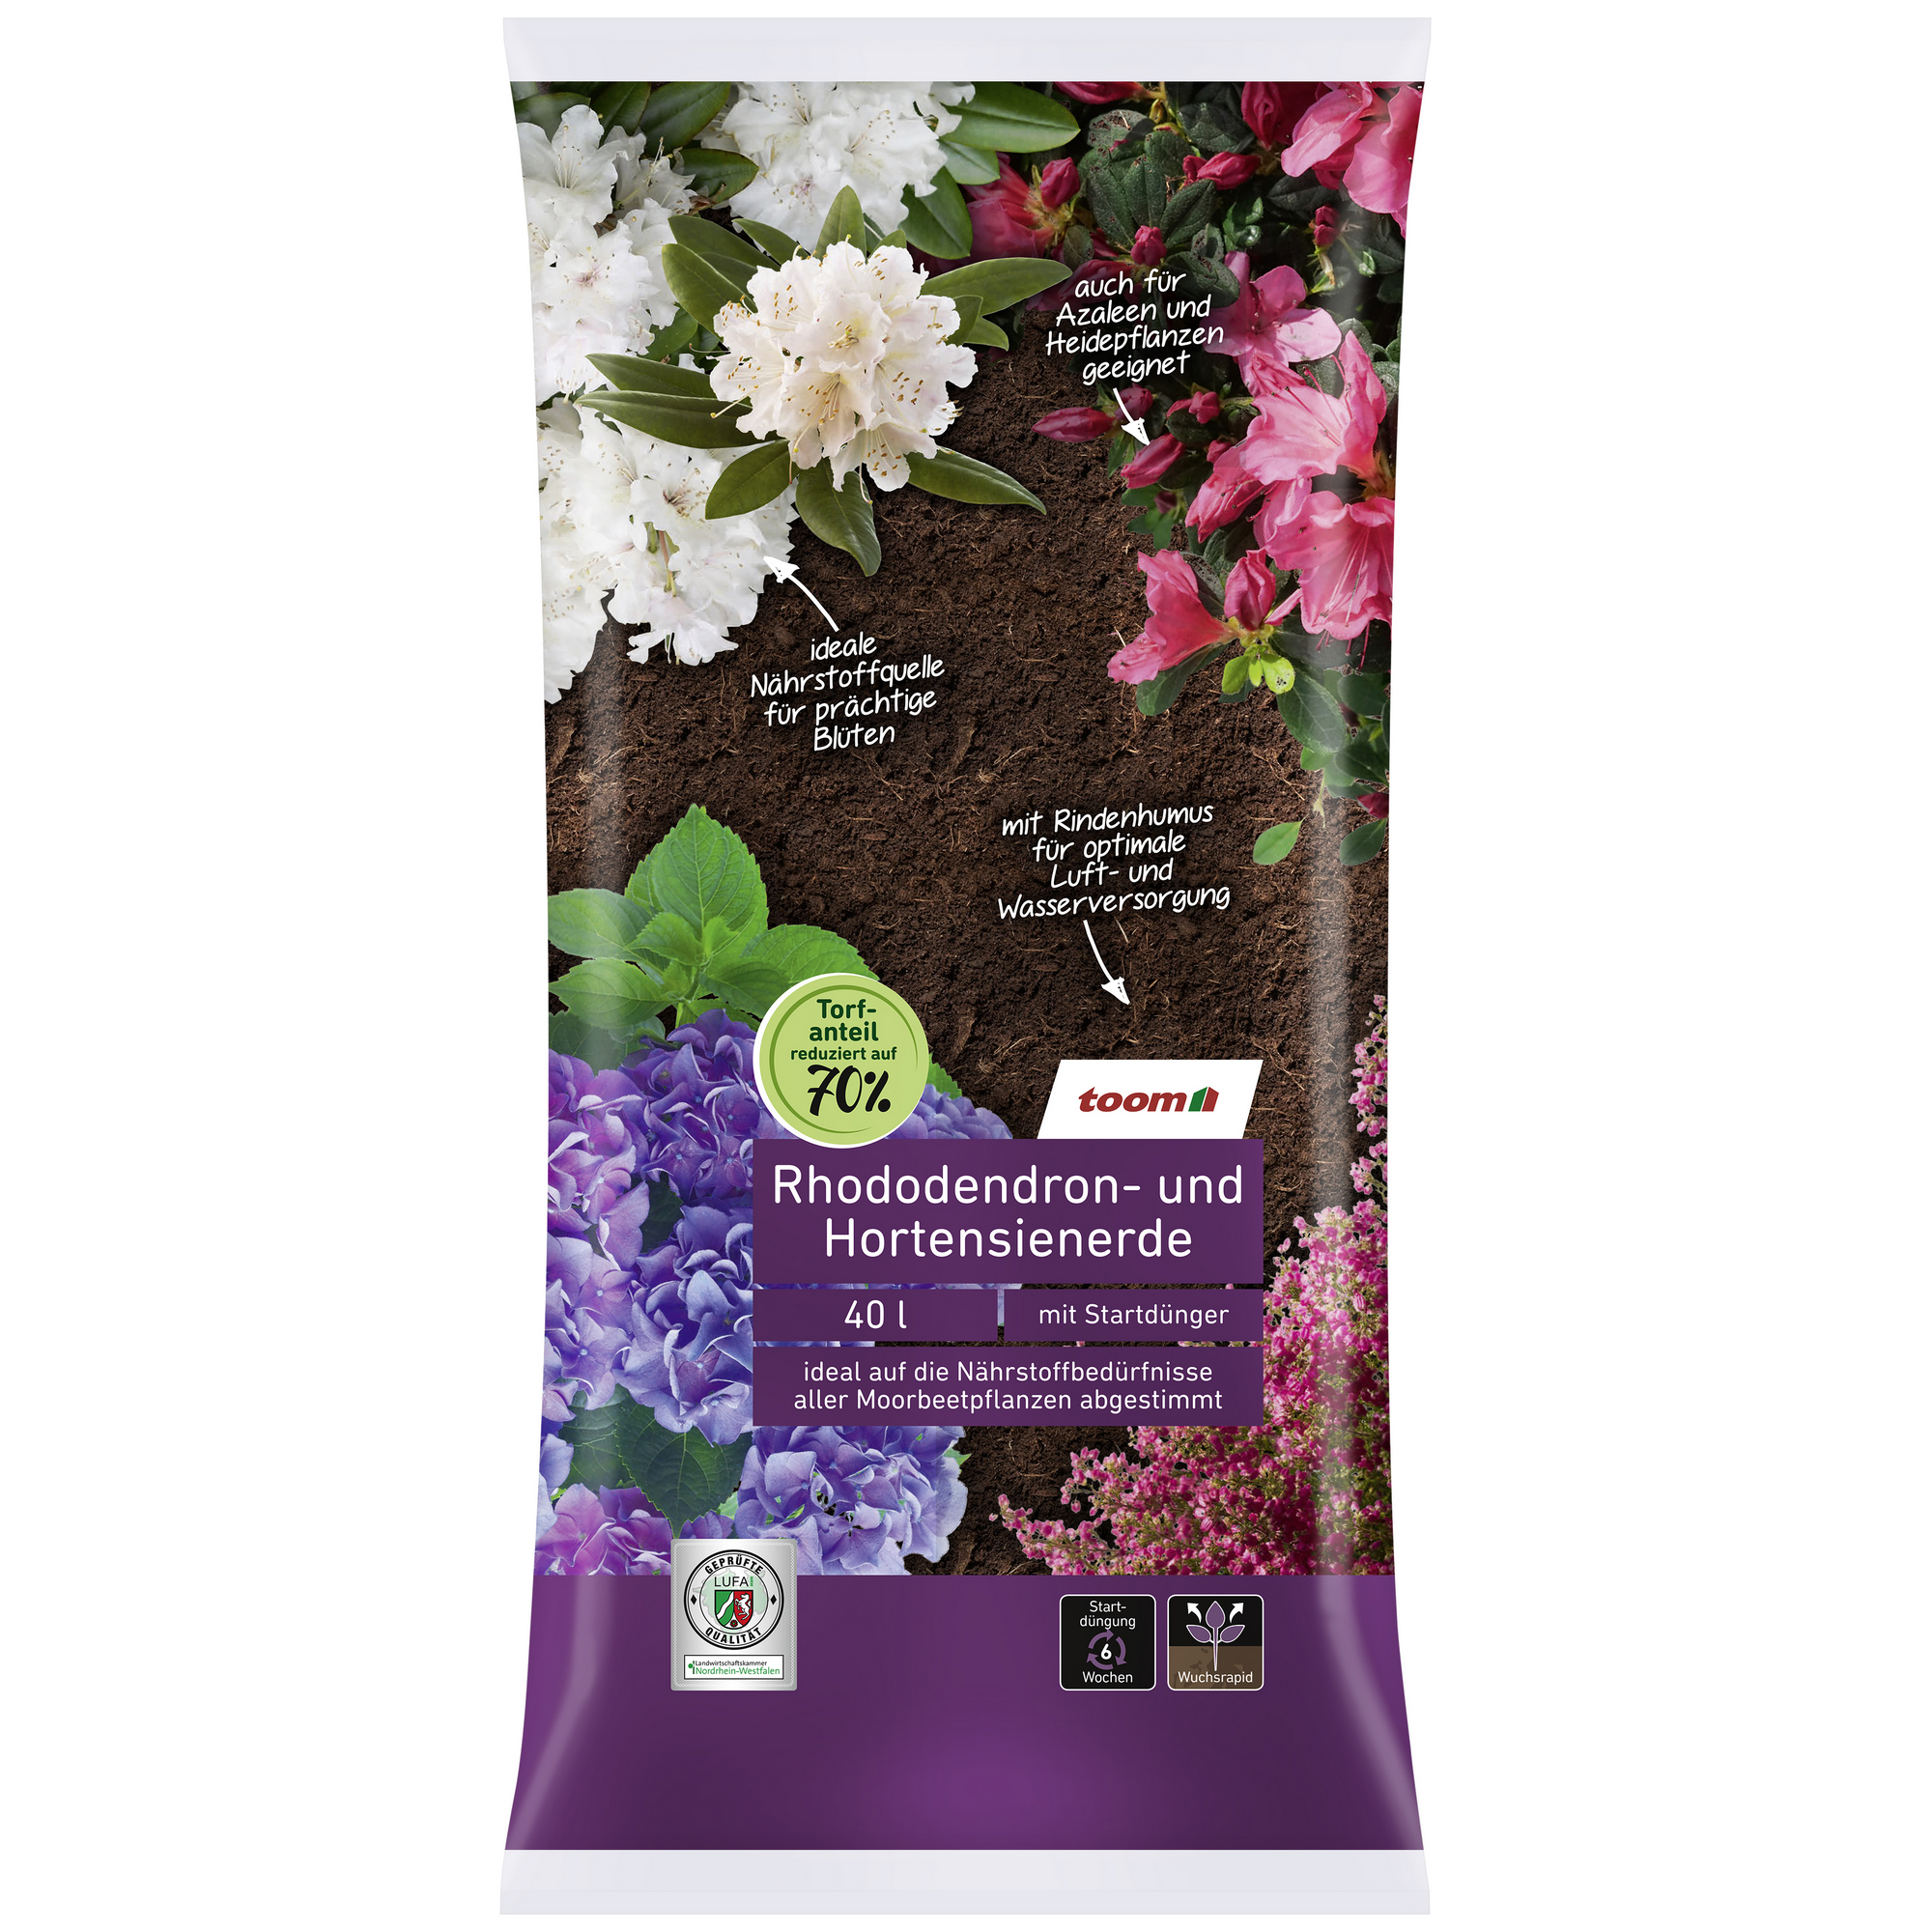 Rhododendron- und Hortensienerde 40 l + product picture